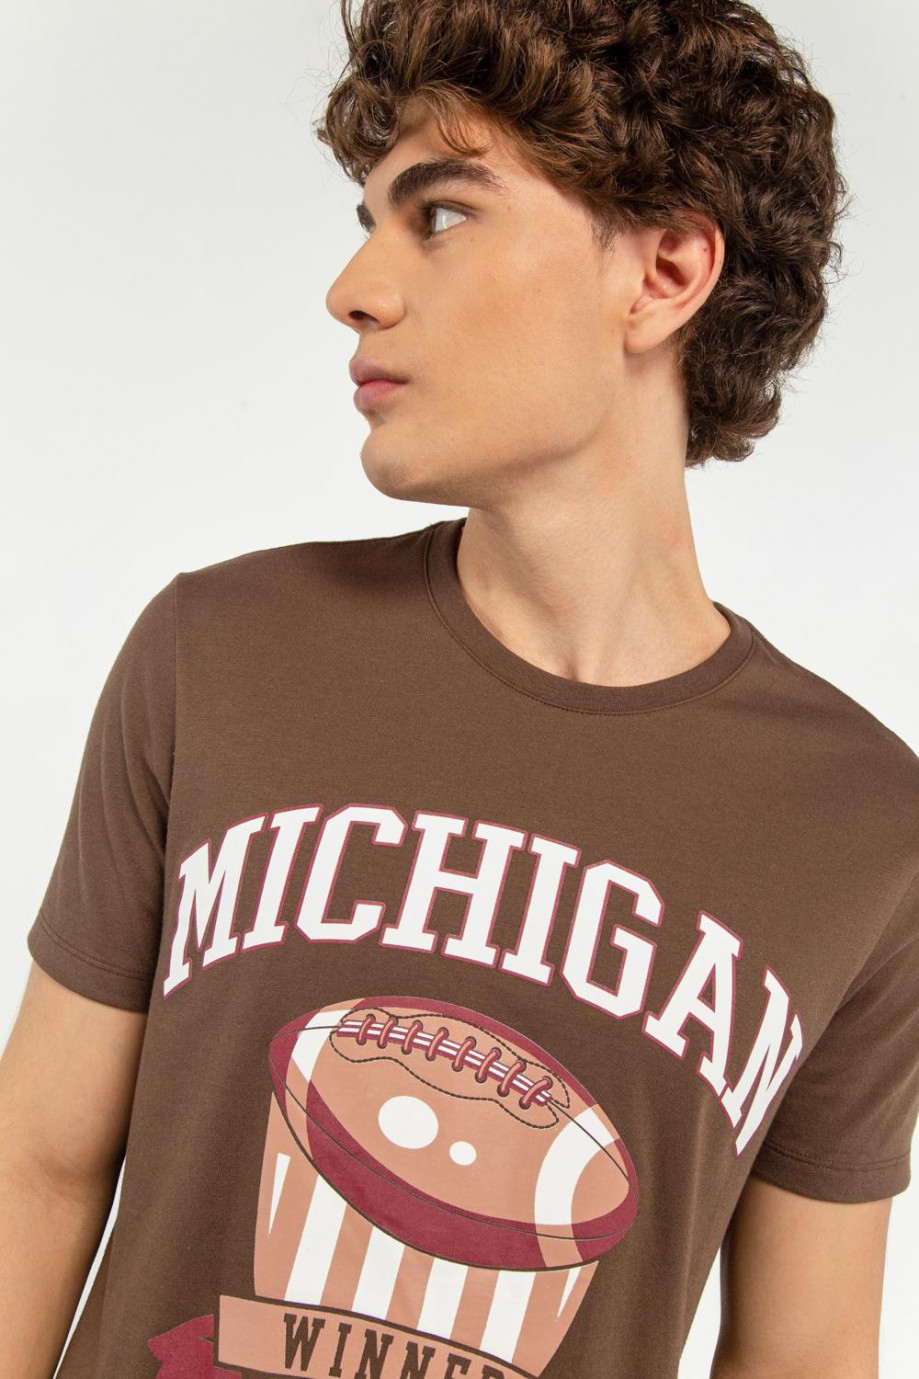 Camiseta cuello redondo café oscuro con diseño college deportivo